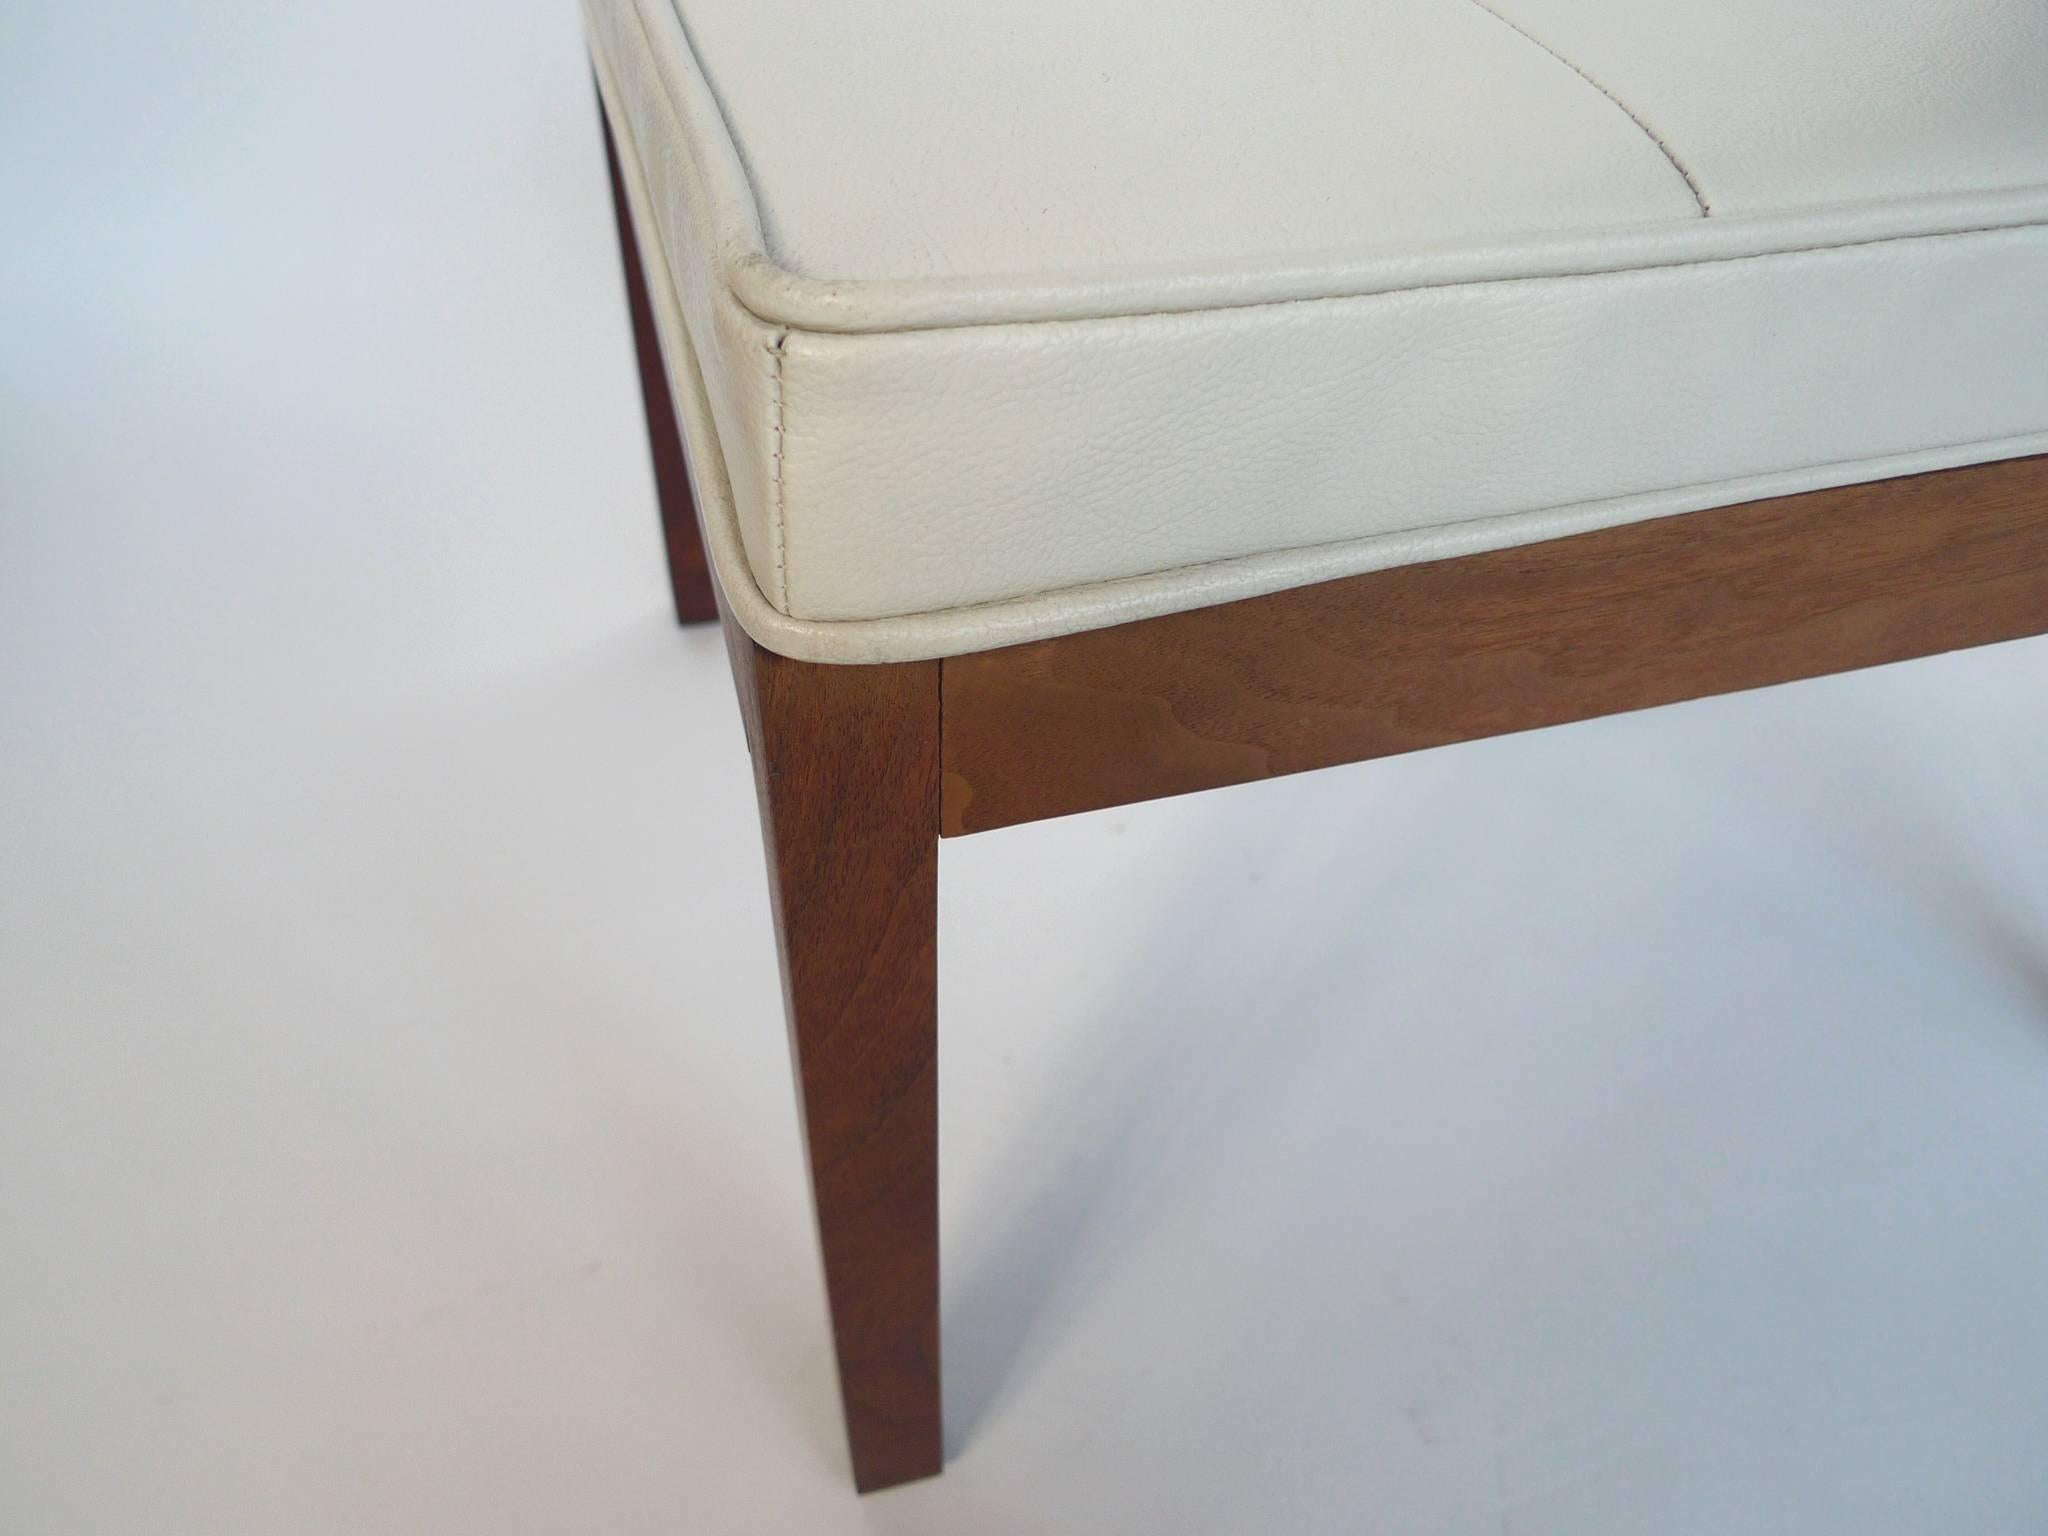 Teak 1960s White Vinyl Tufted Bench by Hibriten Chair Co